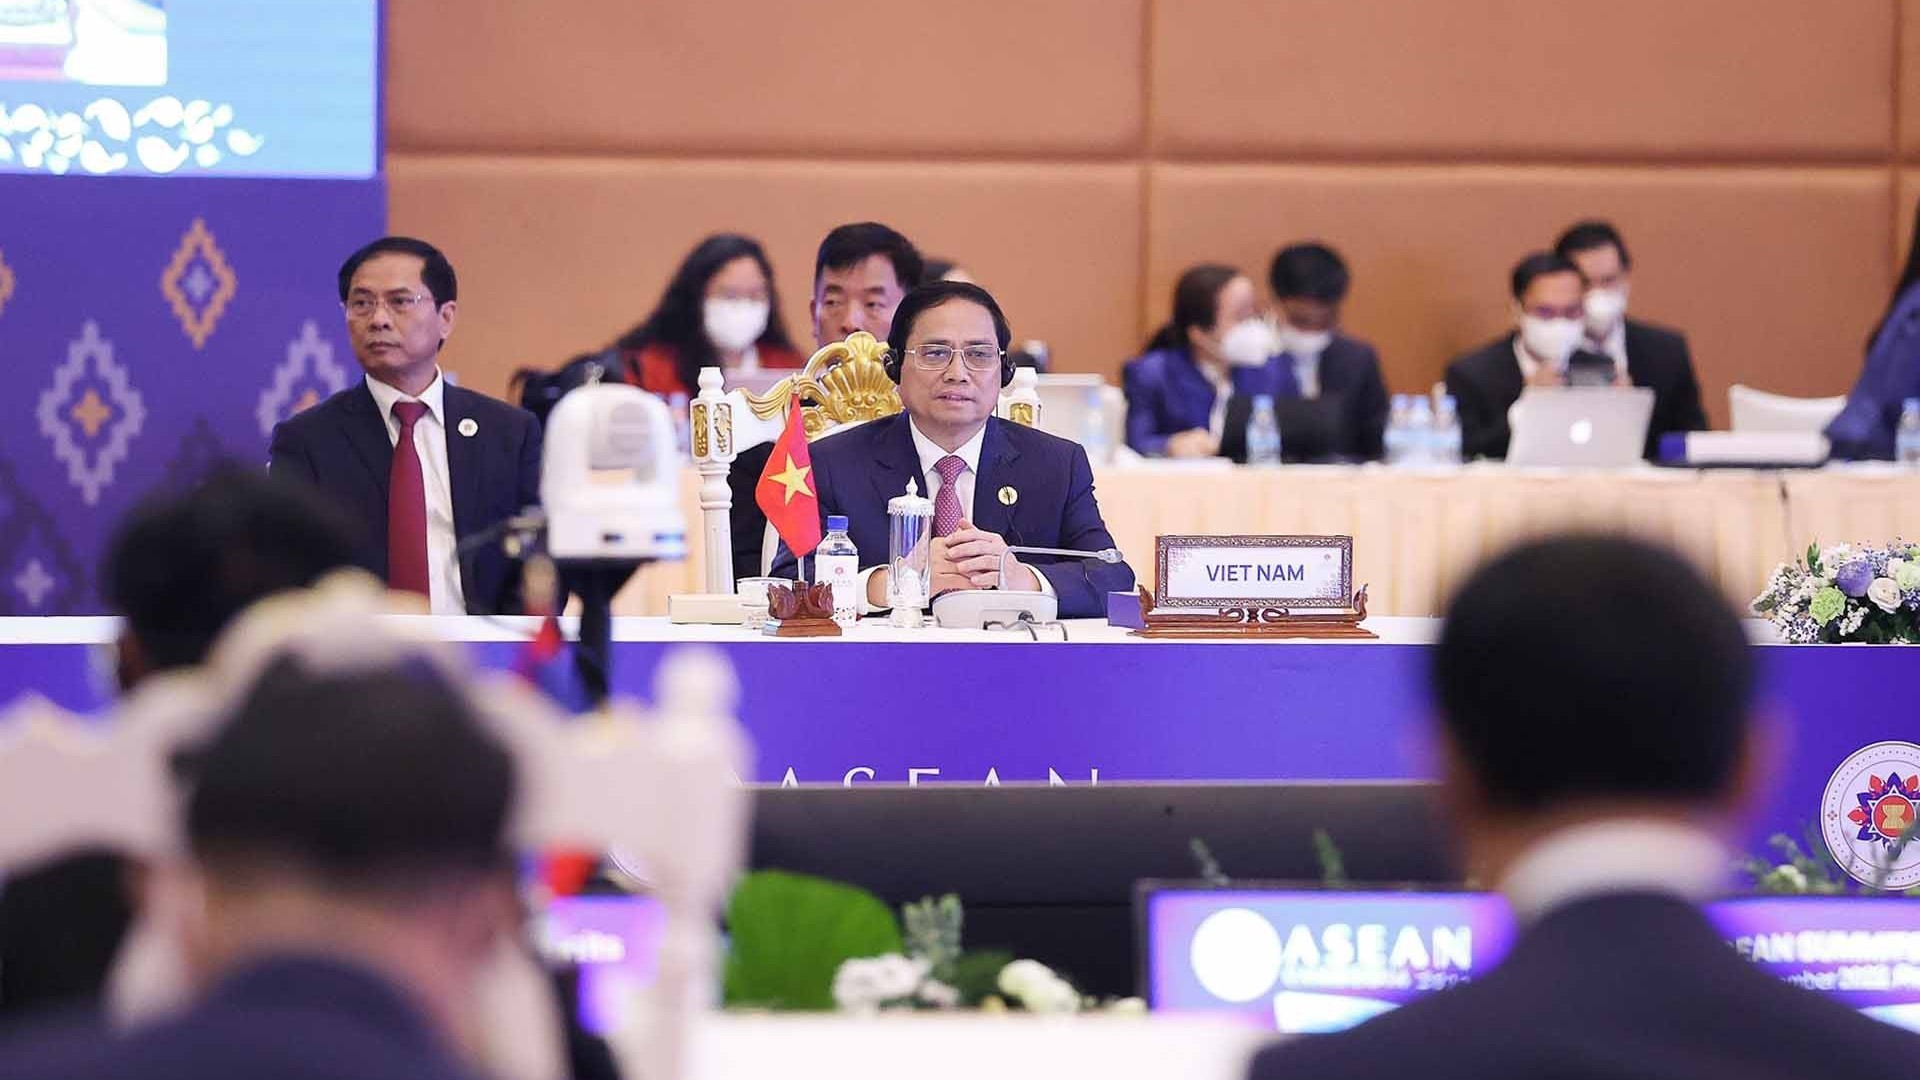 Hội nghị cấp cao ASEAN 41: Thủ tướng Phạm Minh Chính khẳng định tầm quan trọng của giữ vững đoàn kết, phát huy sức mạnh nội tại